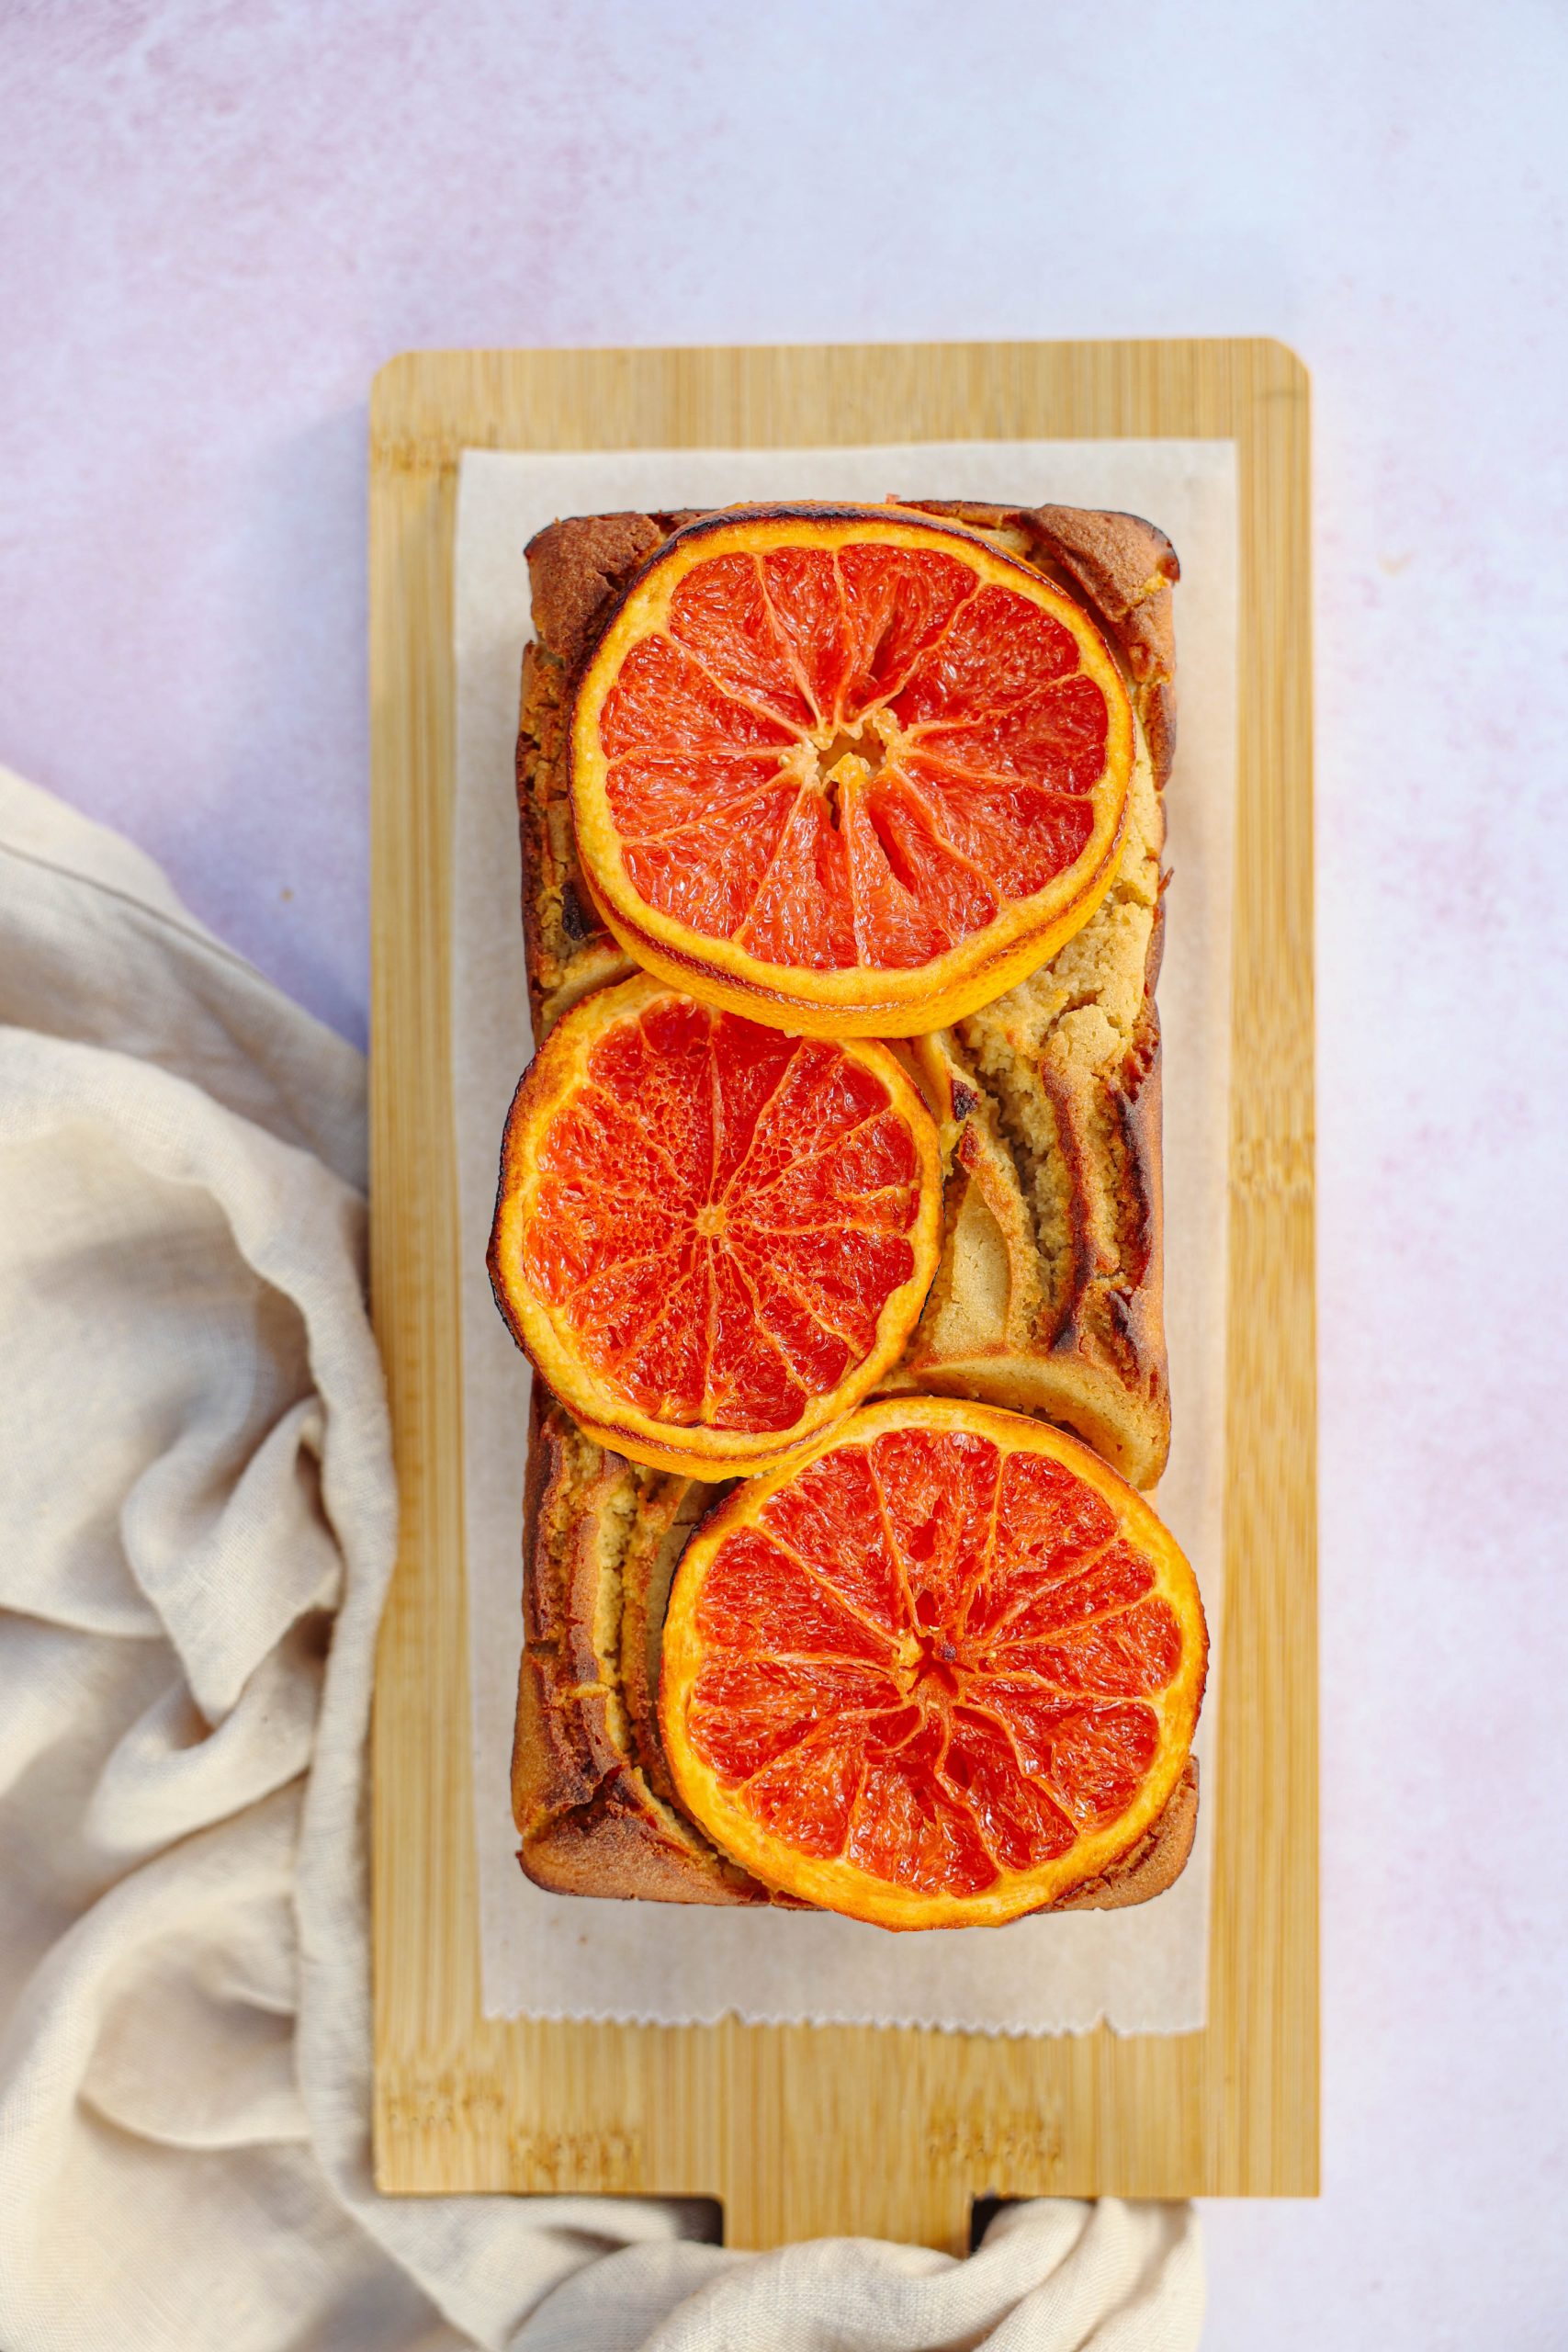 gezonde grapefruitcake met kwark eiwitrijk makkelijk snel en lekker